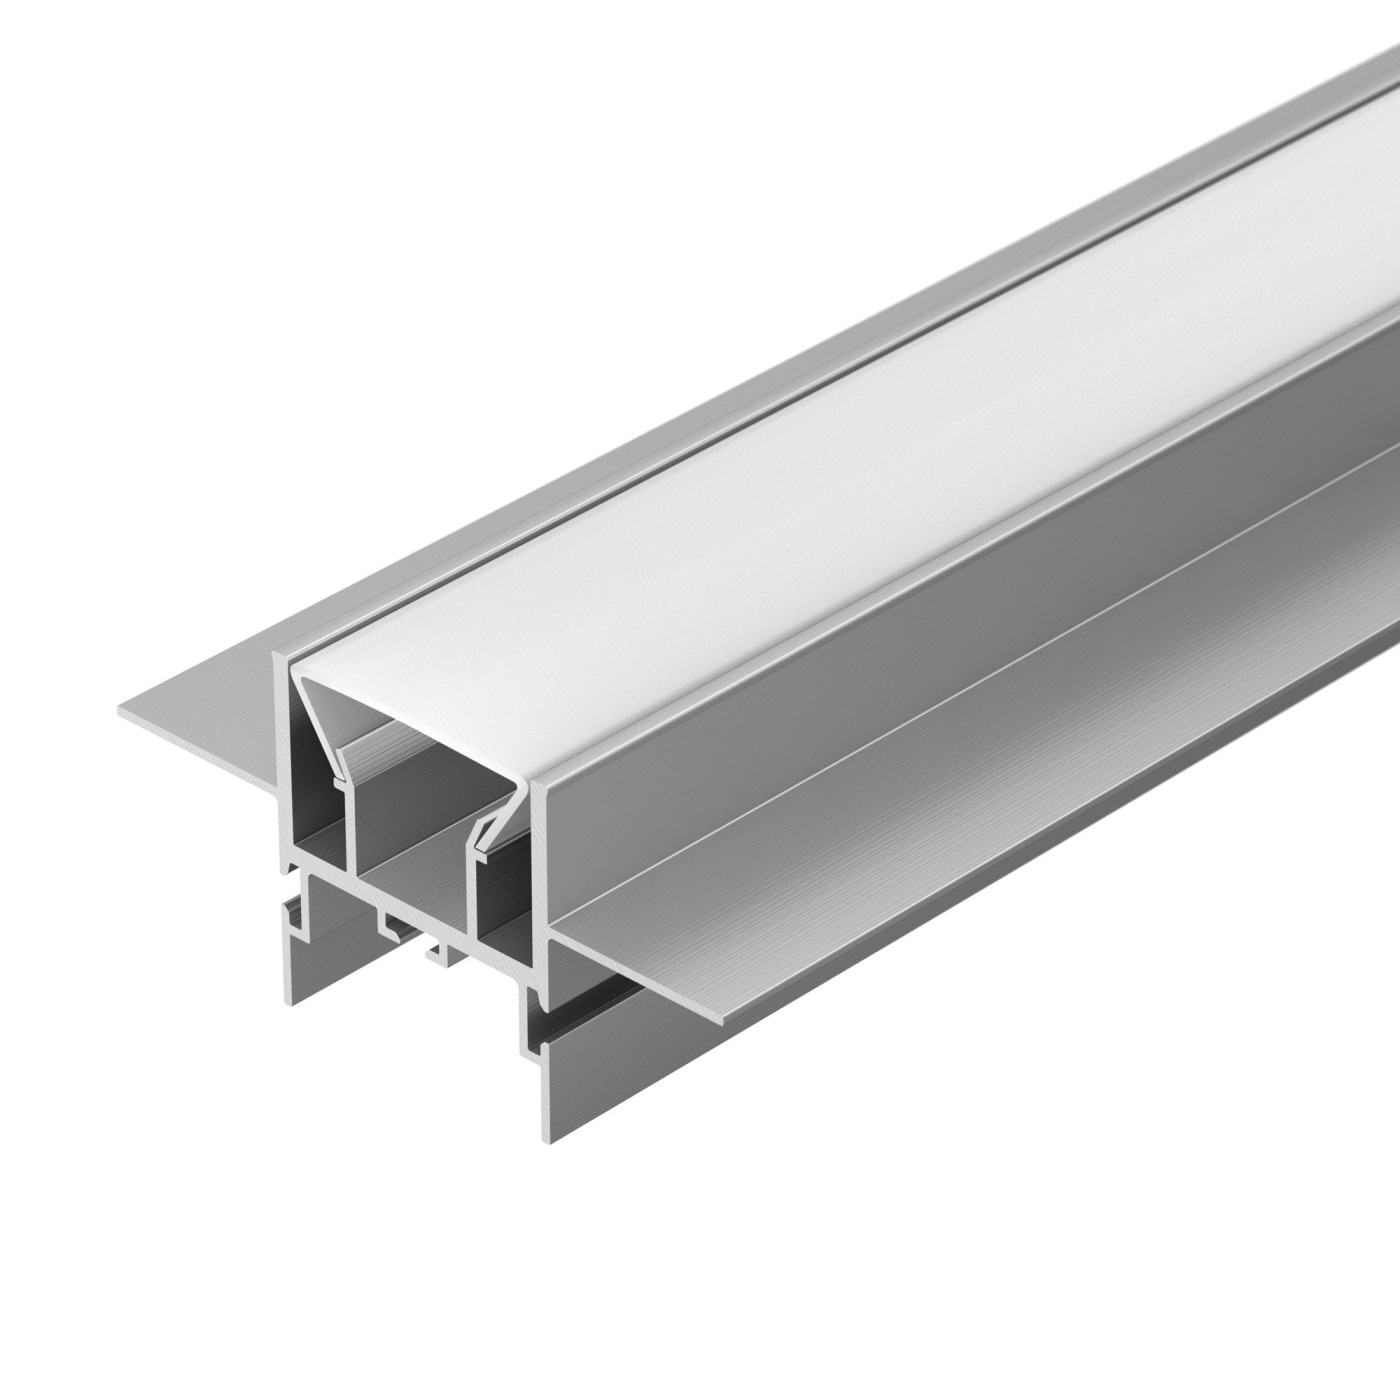 Профиль FOLED-CEIL-CENTER-2000 (Arlight, Алюминий) алюминиевый профиль ниши скрытого монтажа для гкл потолка alm 11681 pl b 2m